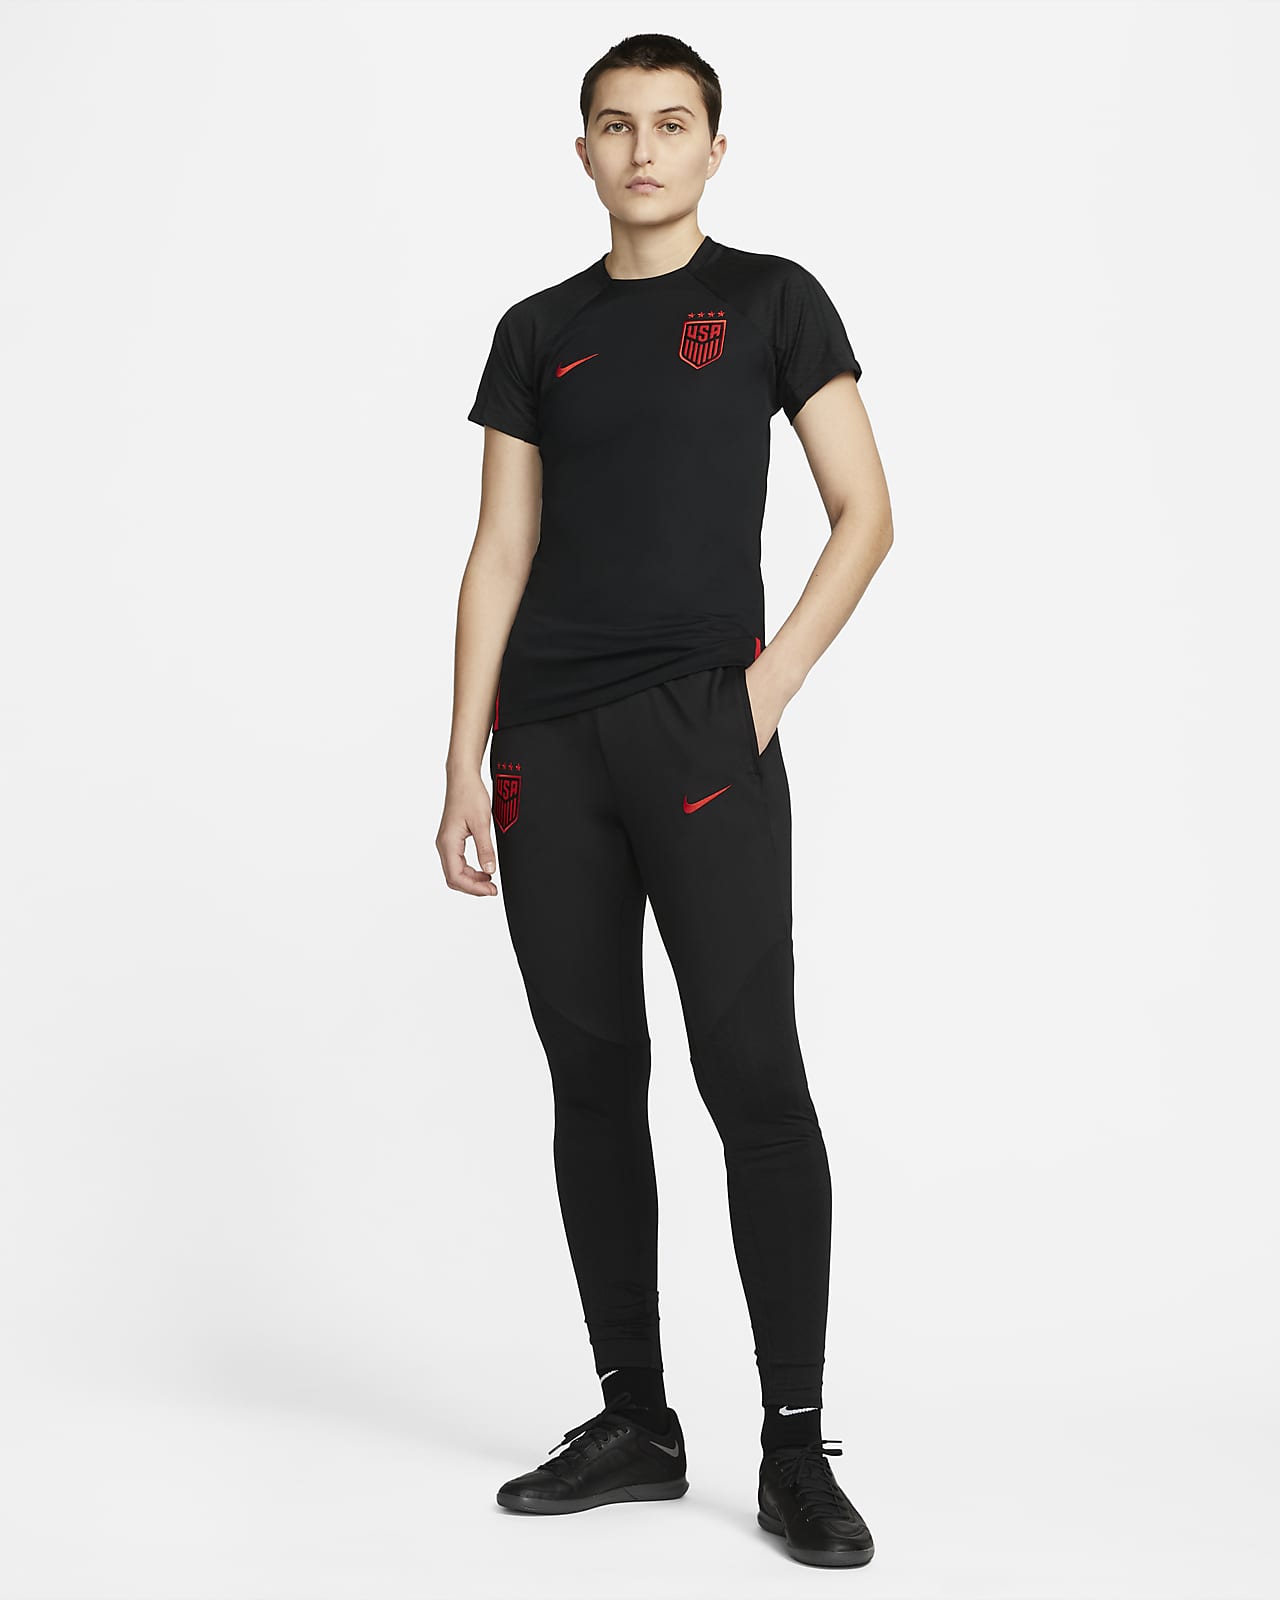 Nike Dri-FIT Strike Women's Soccer Pants - Black / Yellow